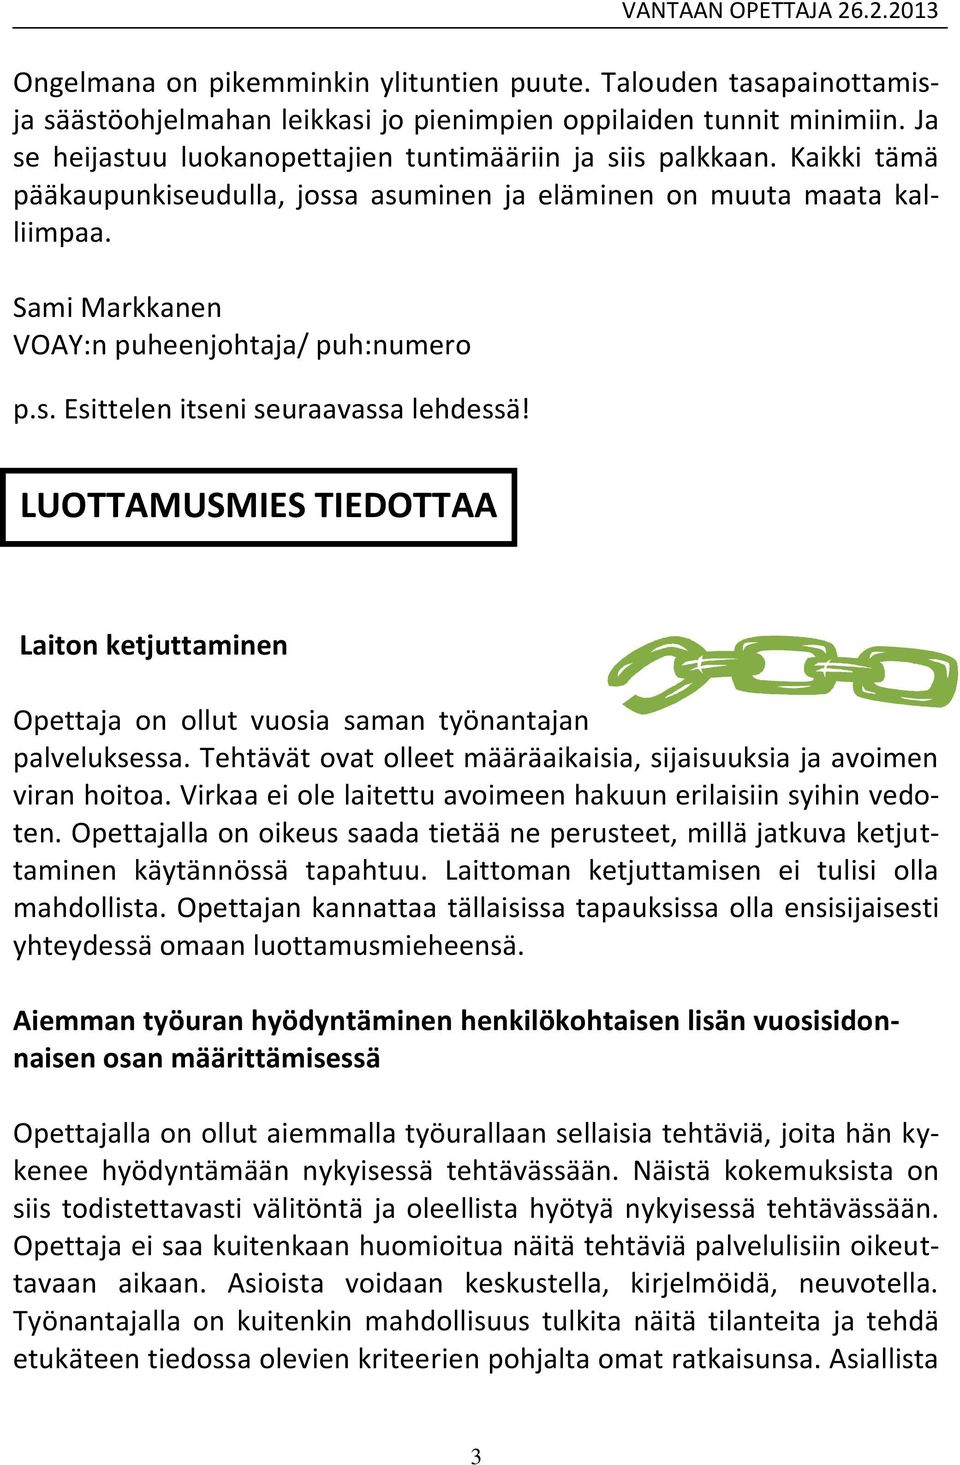 Sami Markkanen VOAY:n puheenjohtaja/ puh:numero p.s. Esittelen itseni seuraavassa lehdessä! Laiton ketjuttaminen Opettaja on ollut vuosia saman työnantajan palveluksessa.